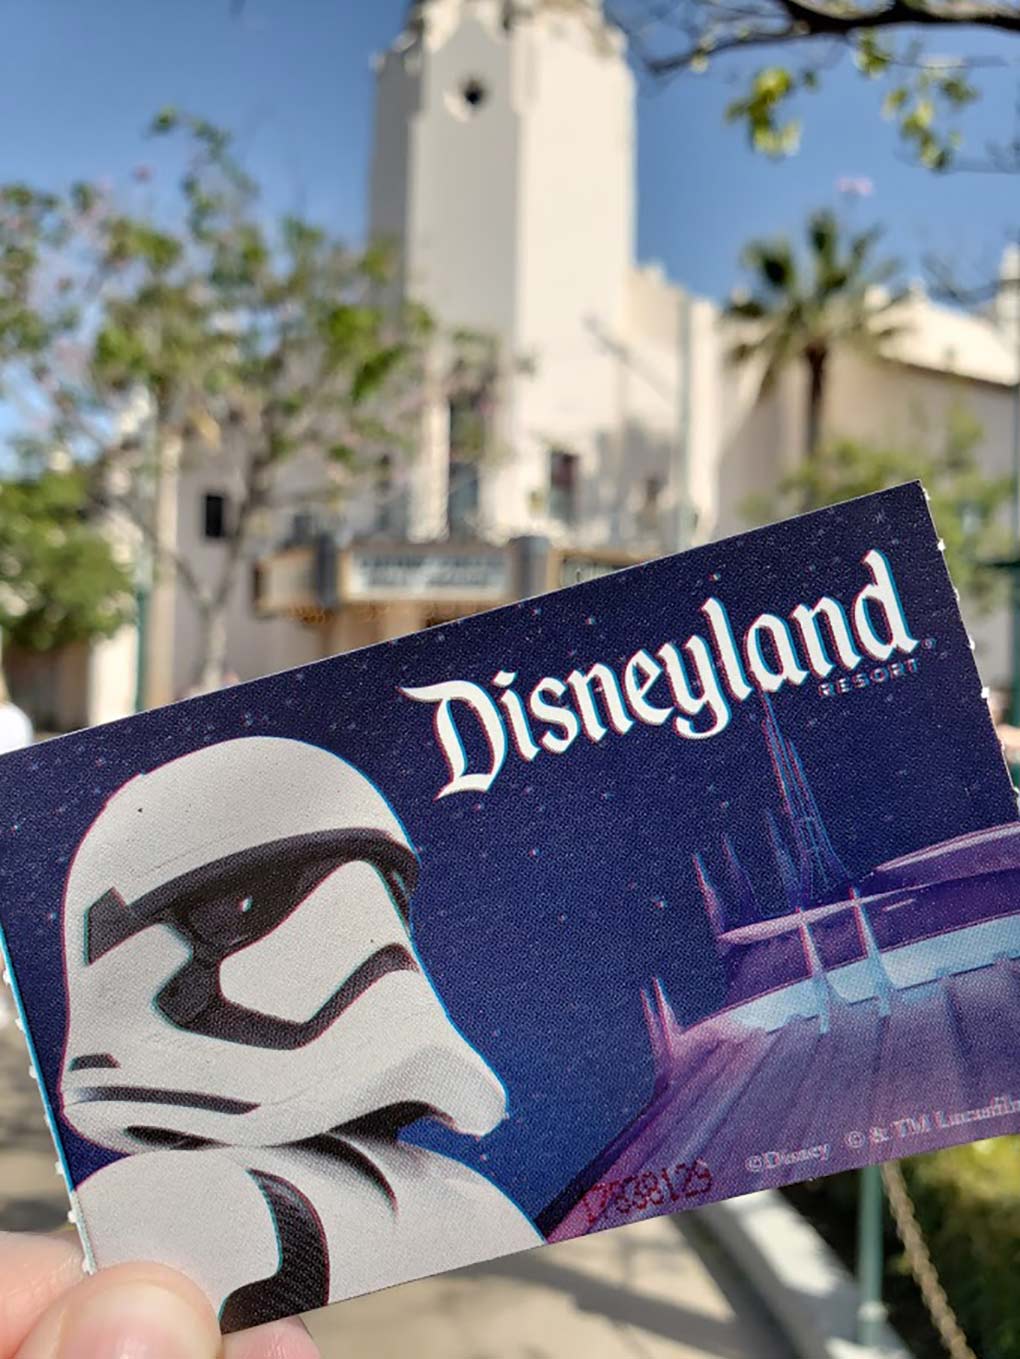 Disneyland Ticket options, Disneyland ticket in front of Disneyland